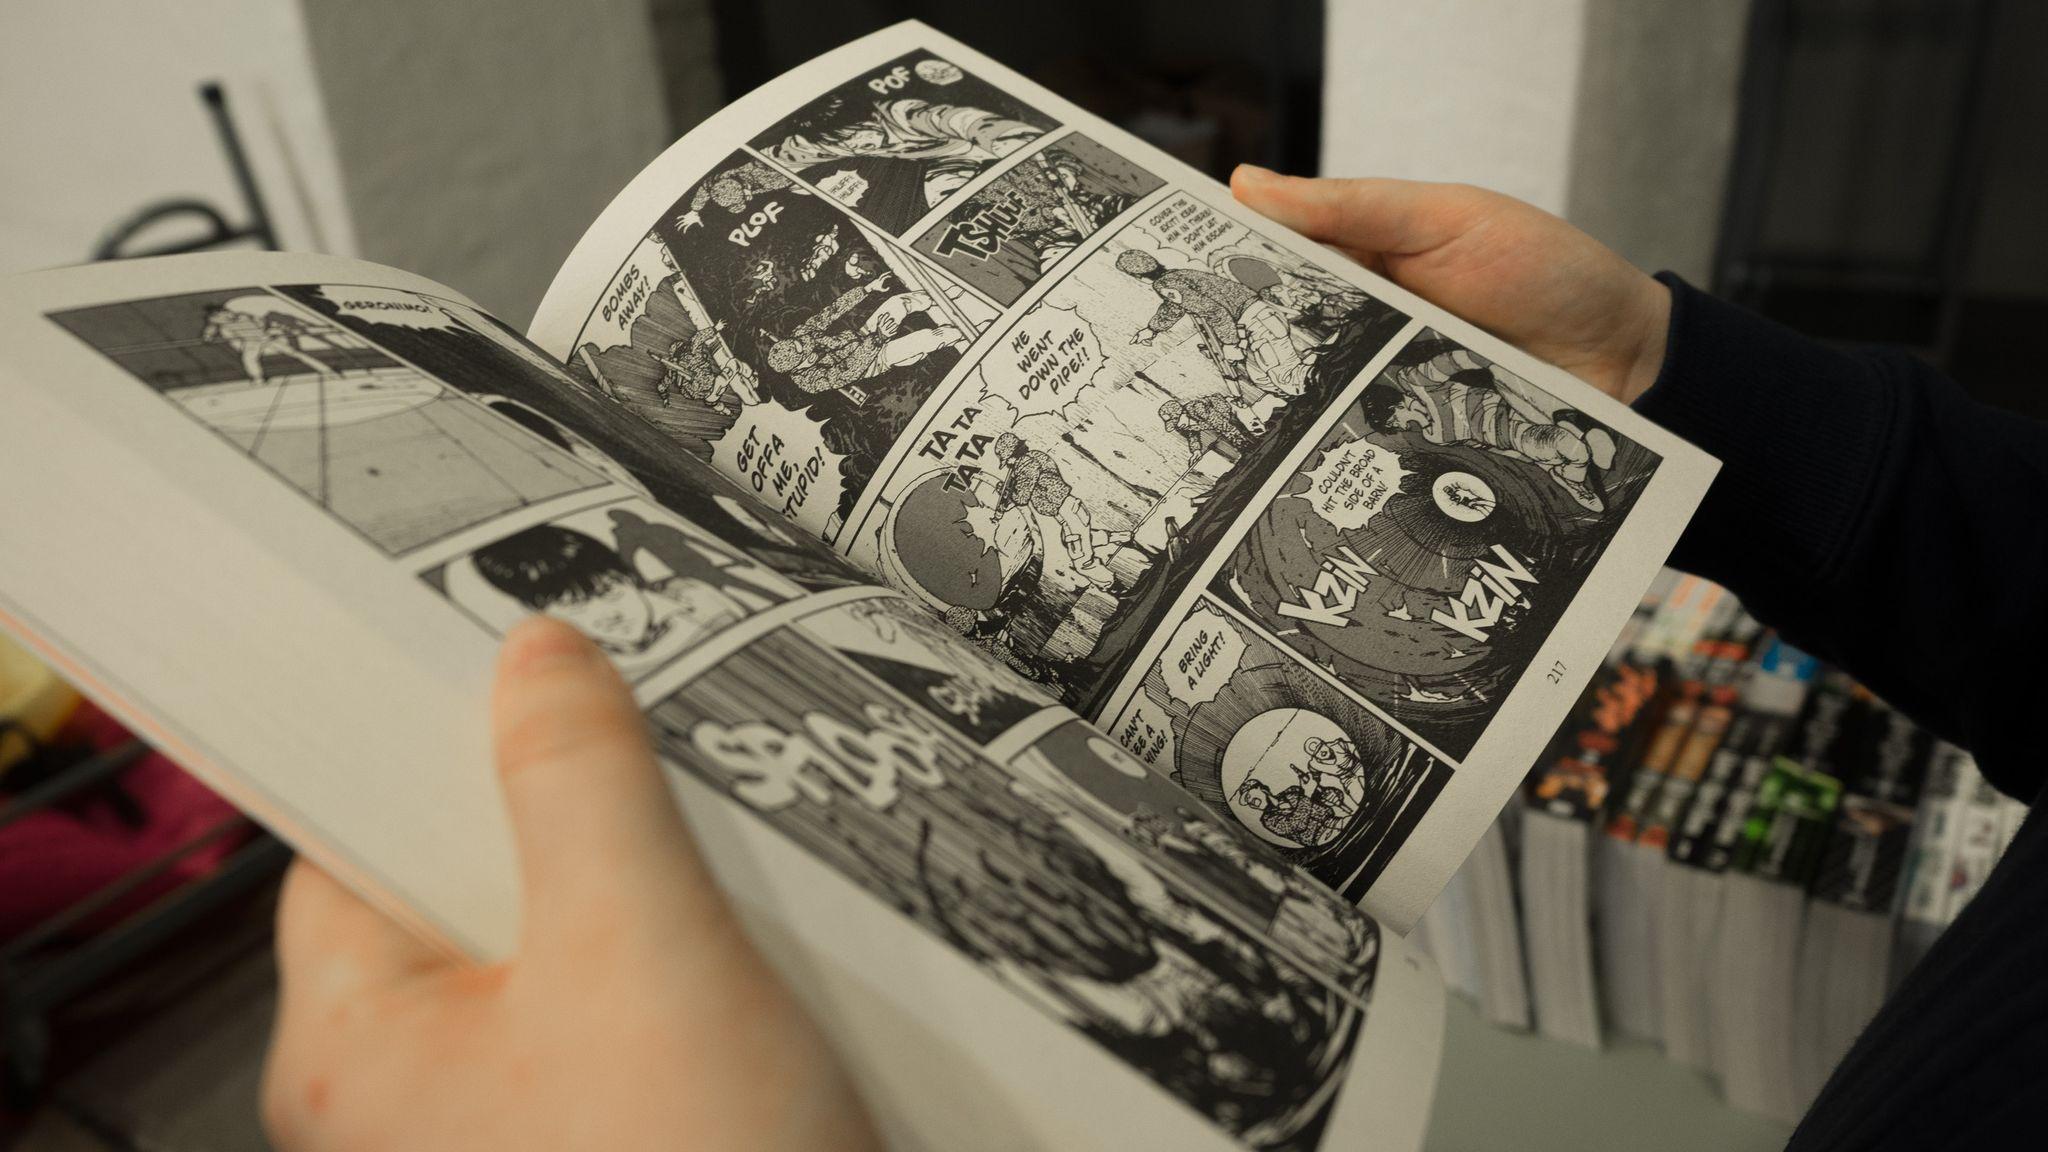 Symbolic image of reading a manga book